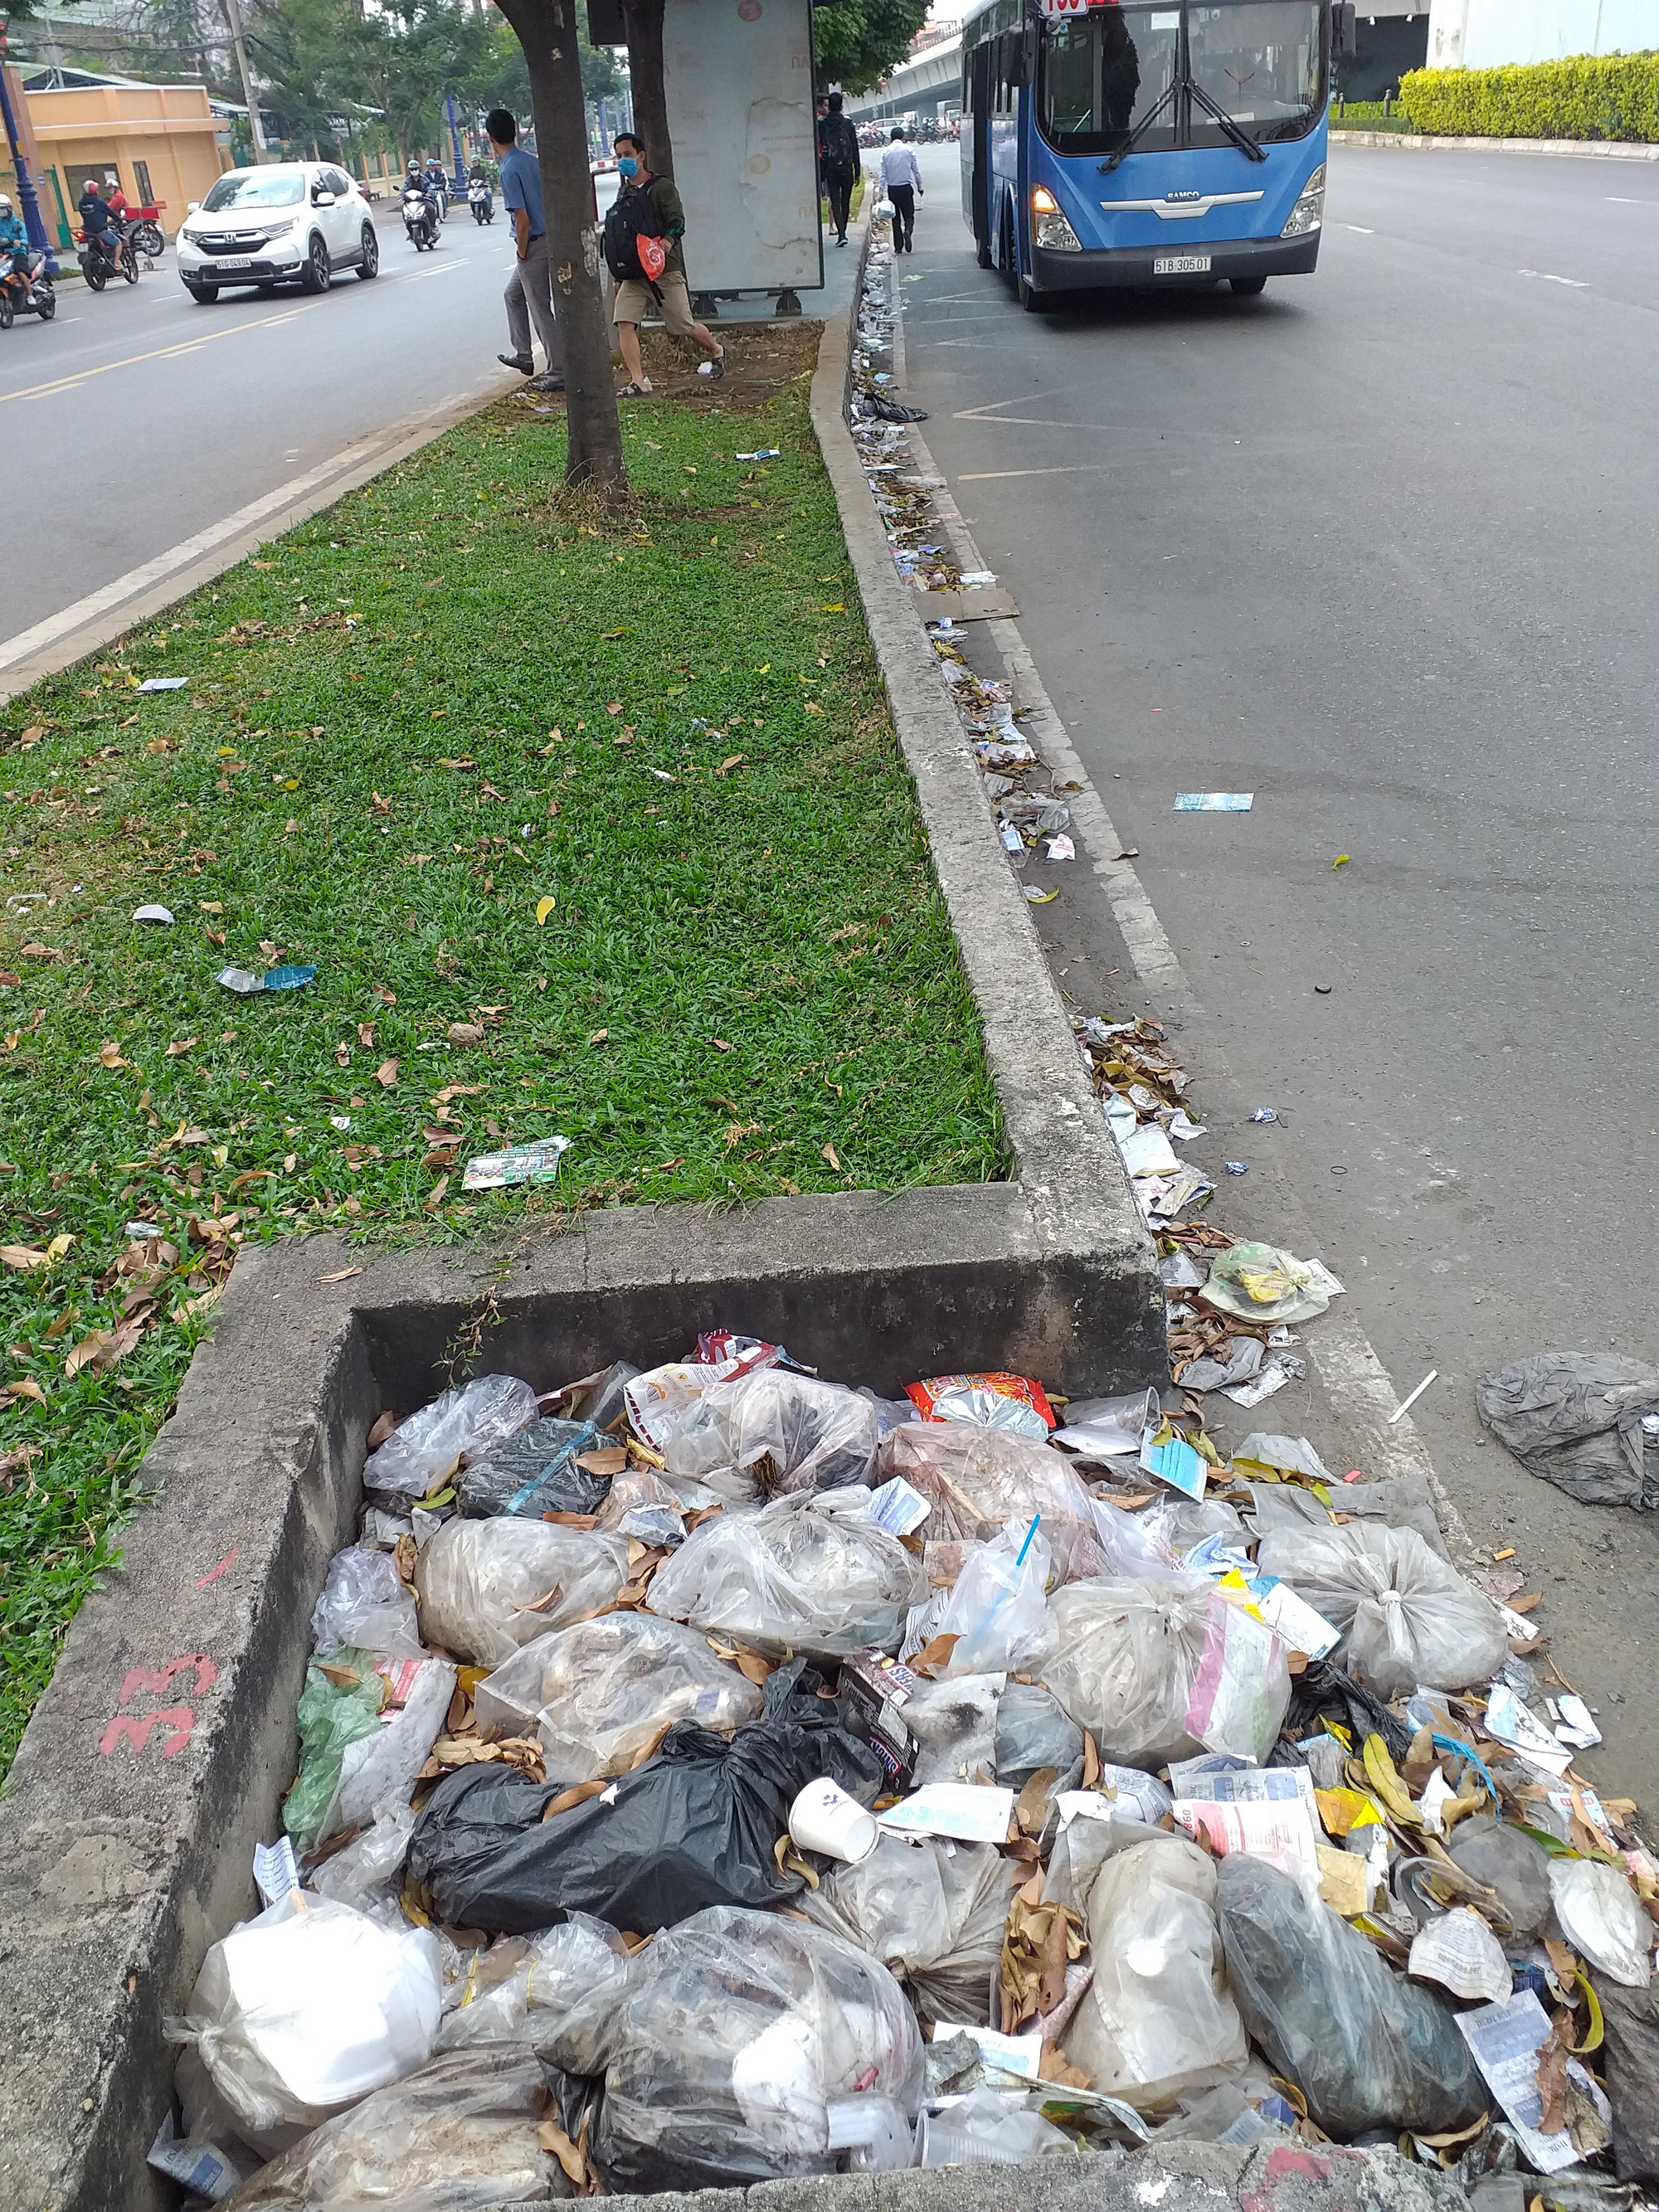 Miệng cống đầy rác thải: Một cảnh tượng không tốt cho mắt nhưng đây lại là chân lý phản ánh cách thức sống của chúng ta đang ảnh hưởng tới môi trường sống. Hãy cùng xem để hiểu rõ lý do vì sao chúng ta cần phải giữ cống và đường phố luôn sạch sẽ để bảo vệ cho sức khỏe con người và môi trường.